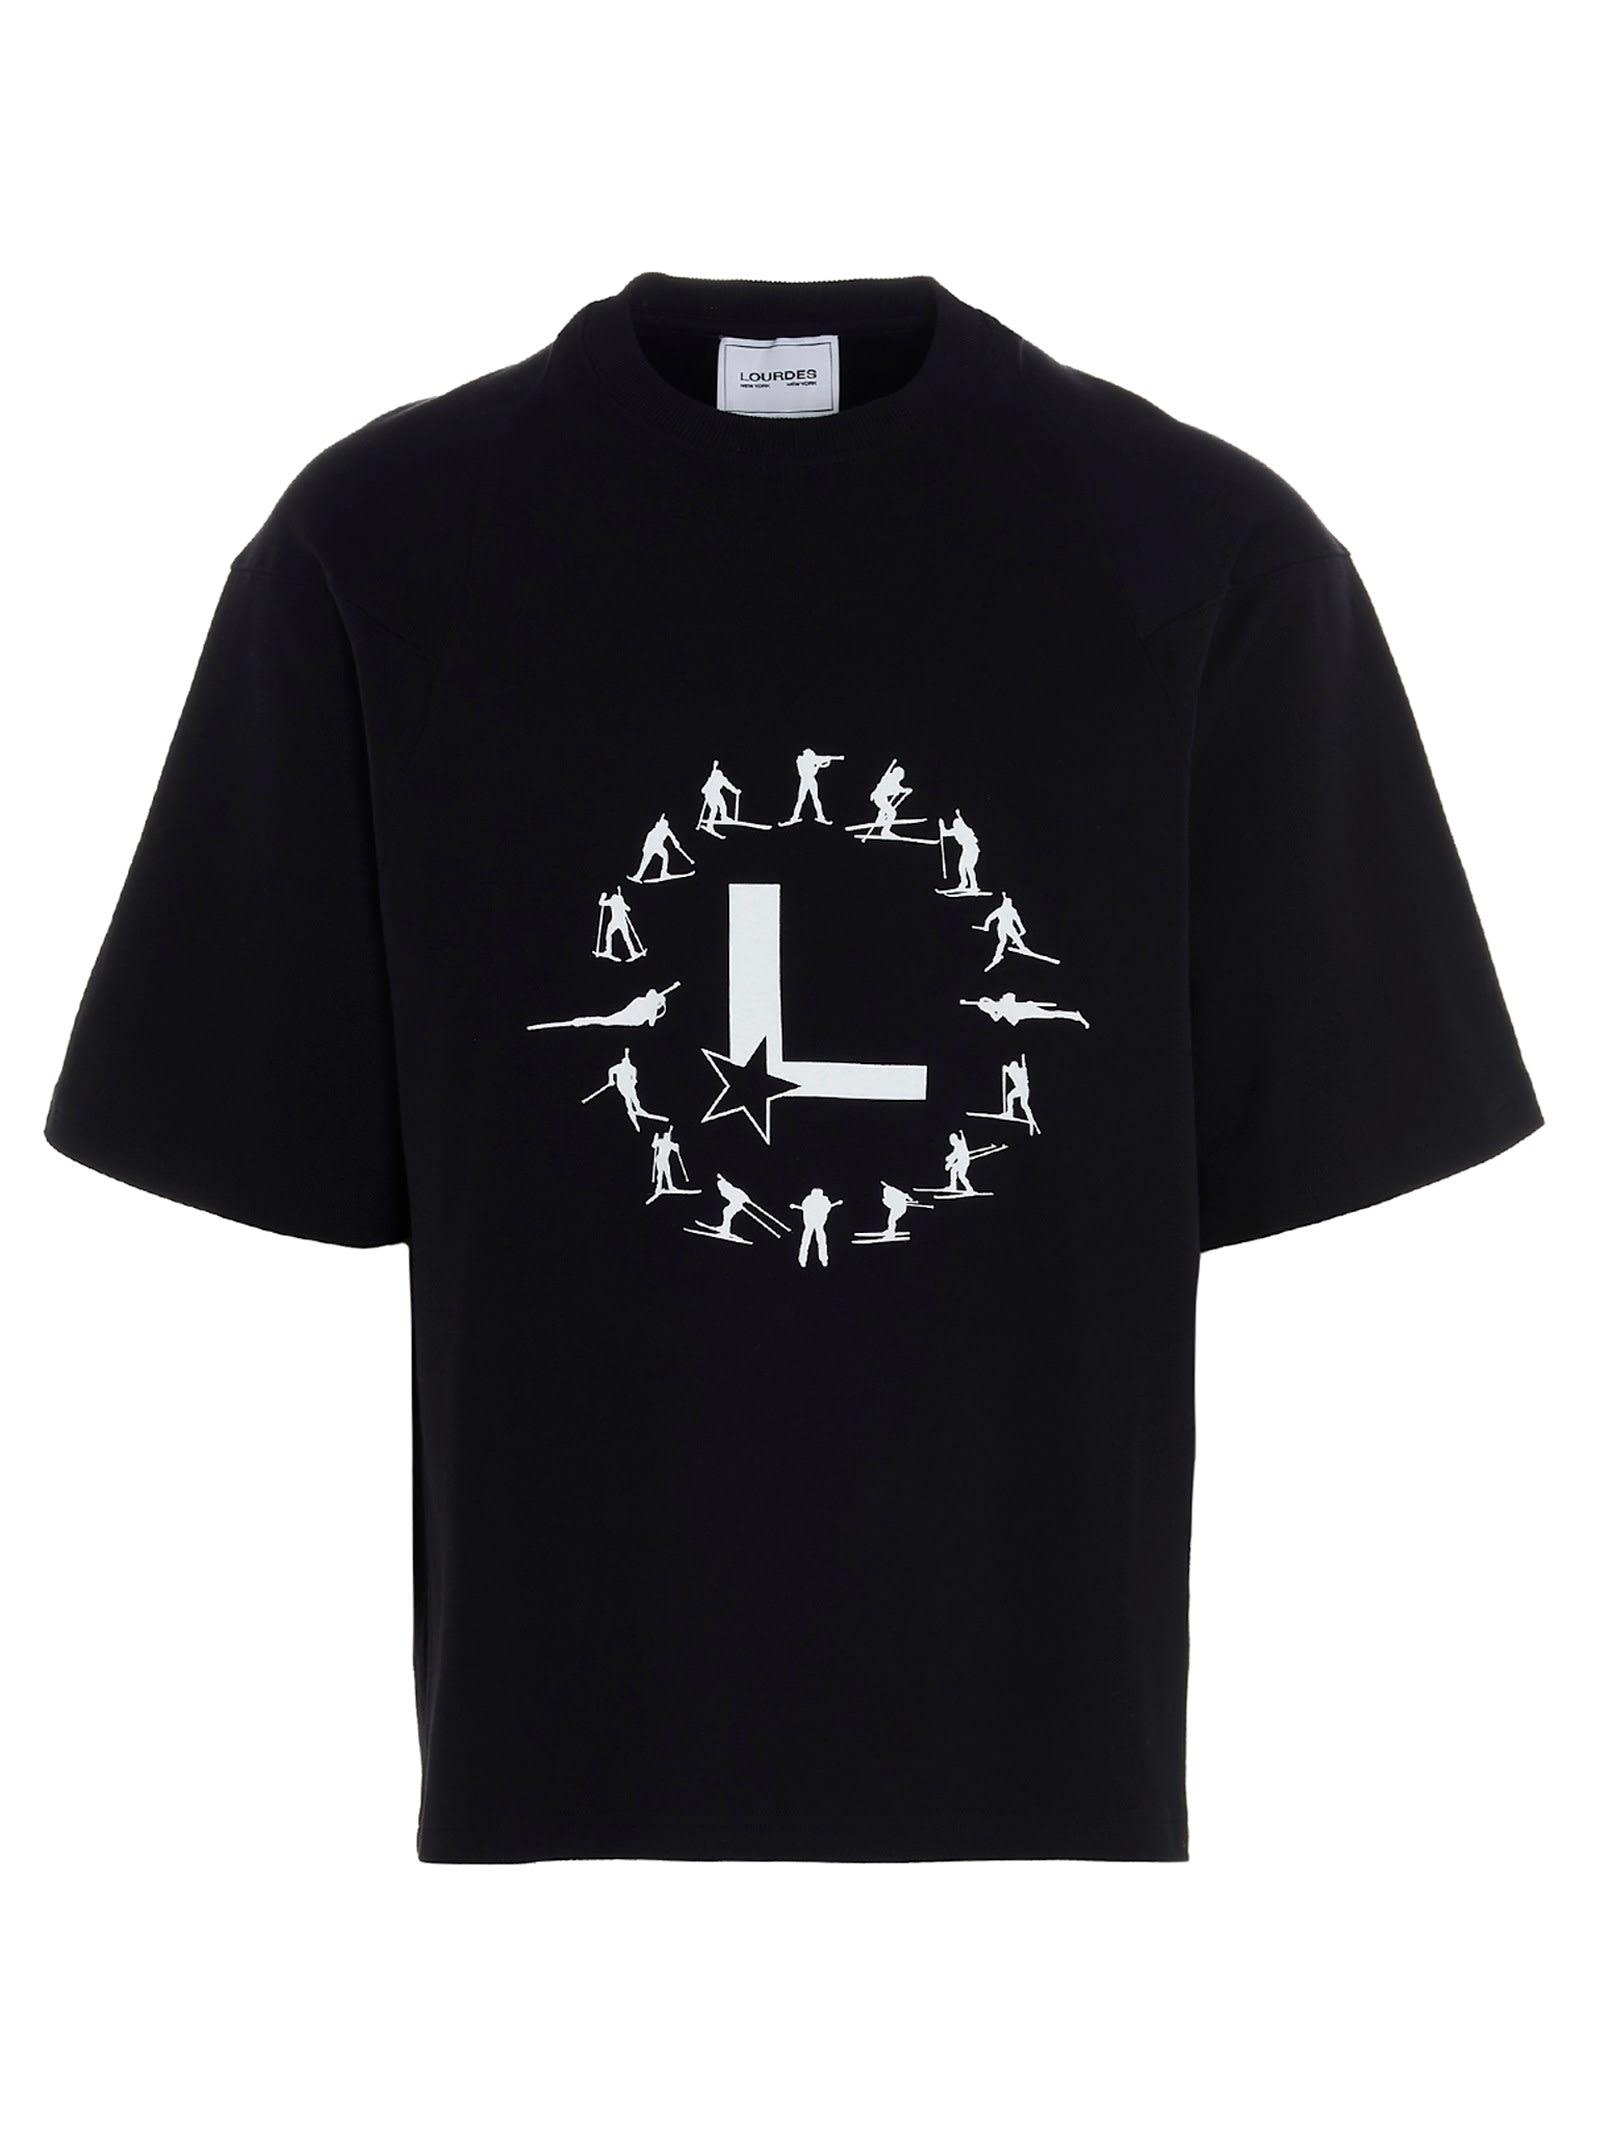 Lourdes Logo Printed T-shirt